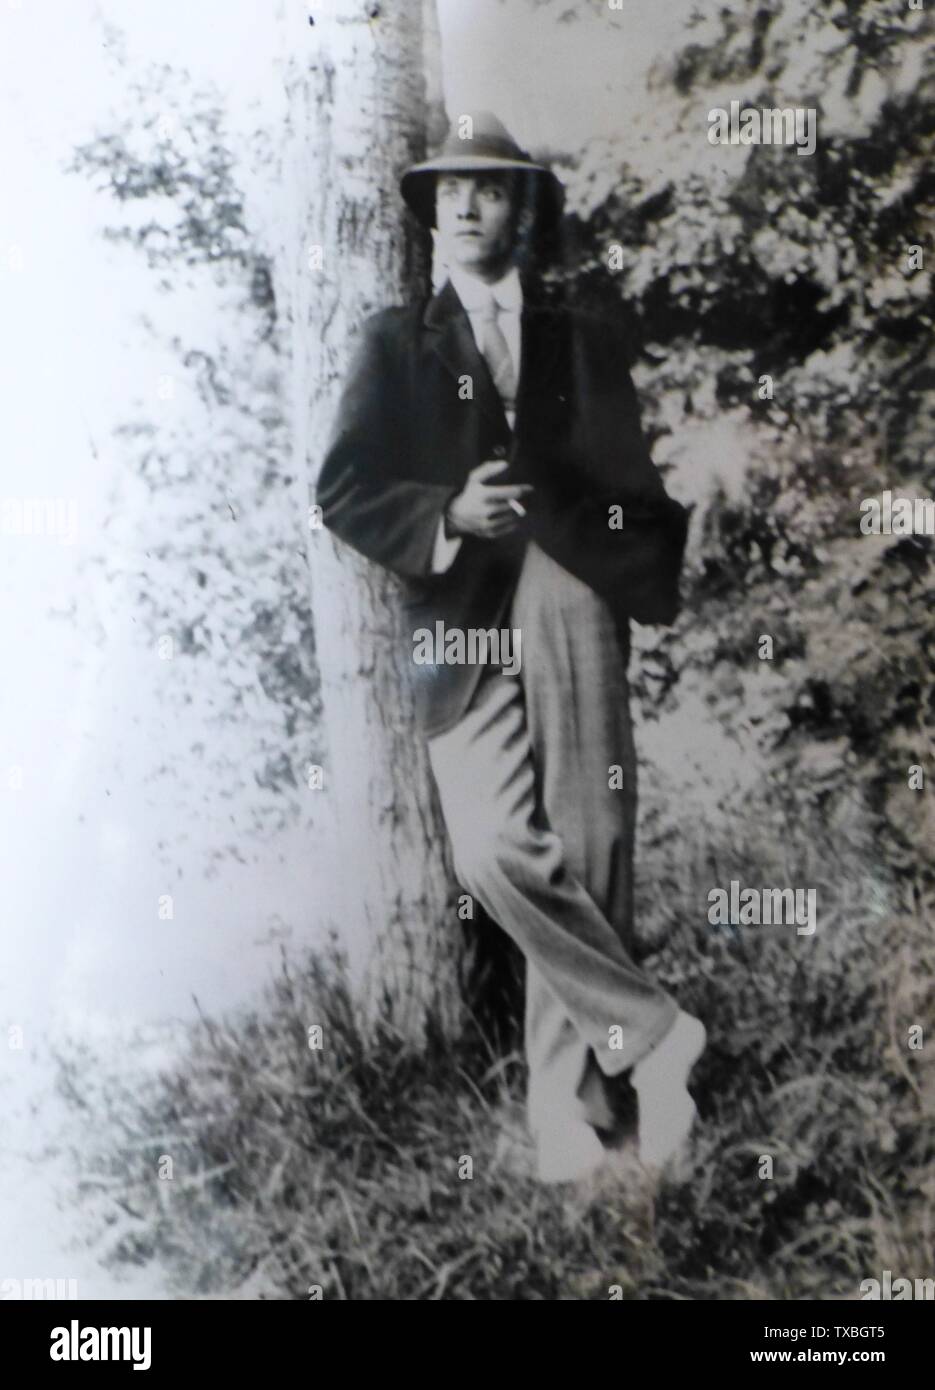 Fotografía del álbum Bagni Di Lucca, Italia; fecha del siglo XX QS:P,+1950-00-00T00:00:00Z/7; exposición de fotografía Bagni di Lucca; Desconocido; Foto de stock